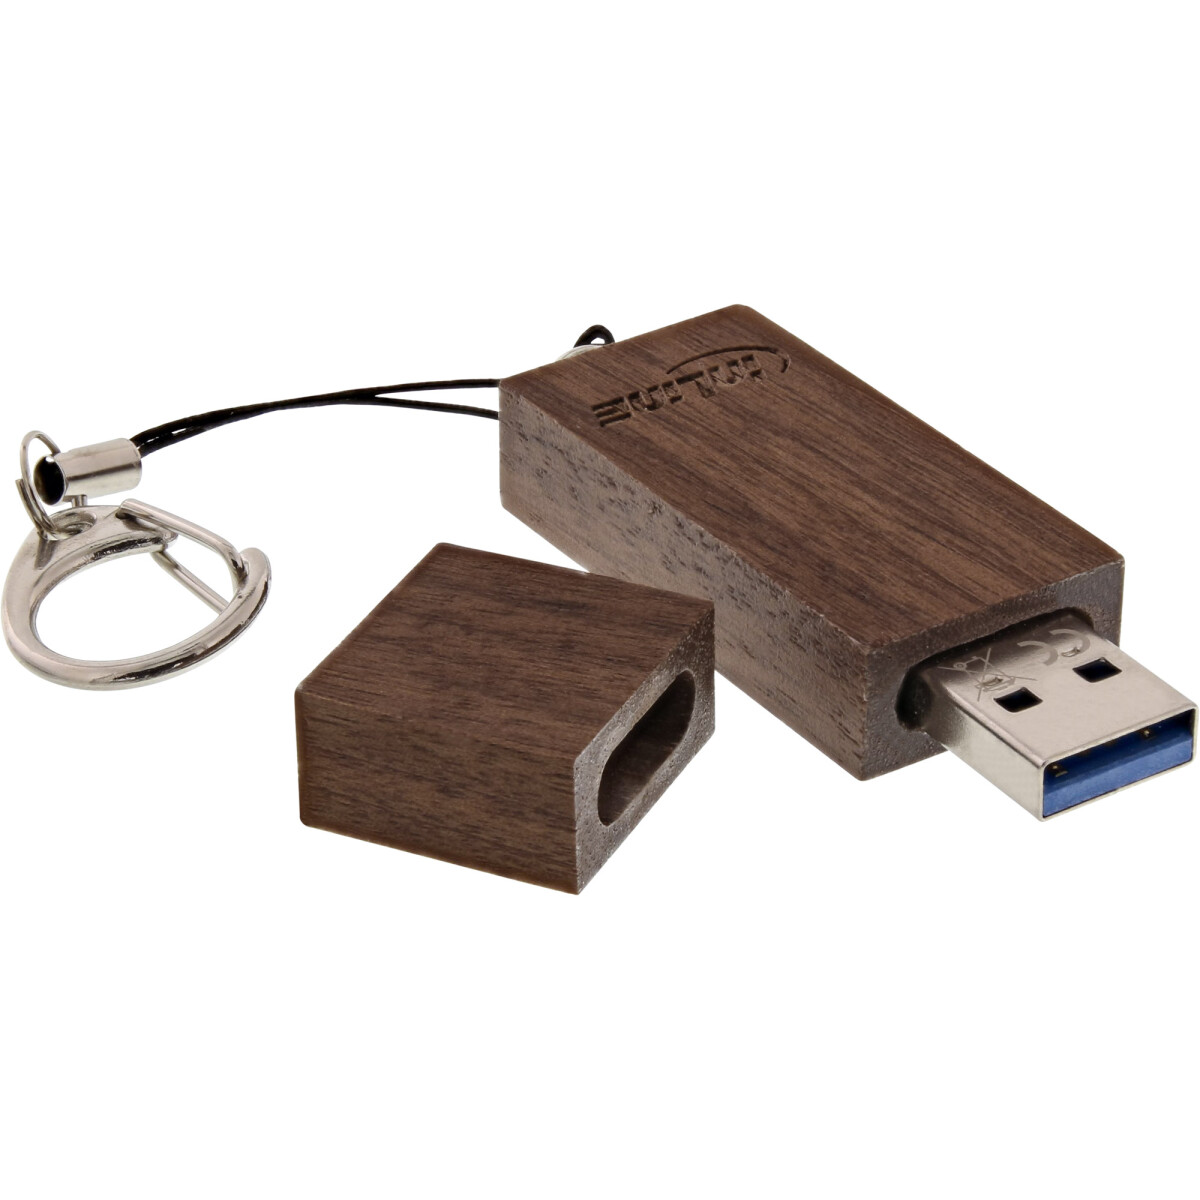 InLine® USB 3.0 Flash drive, woodline walnut, with...